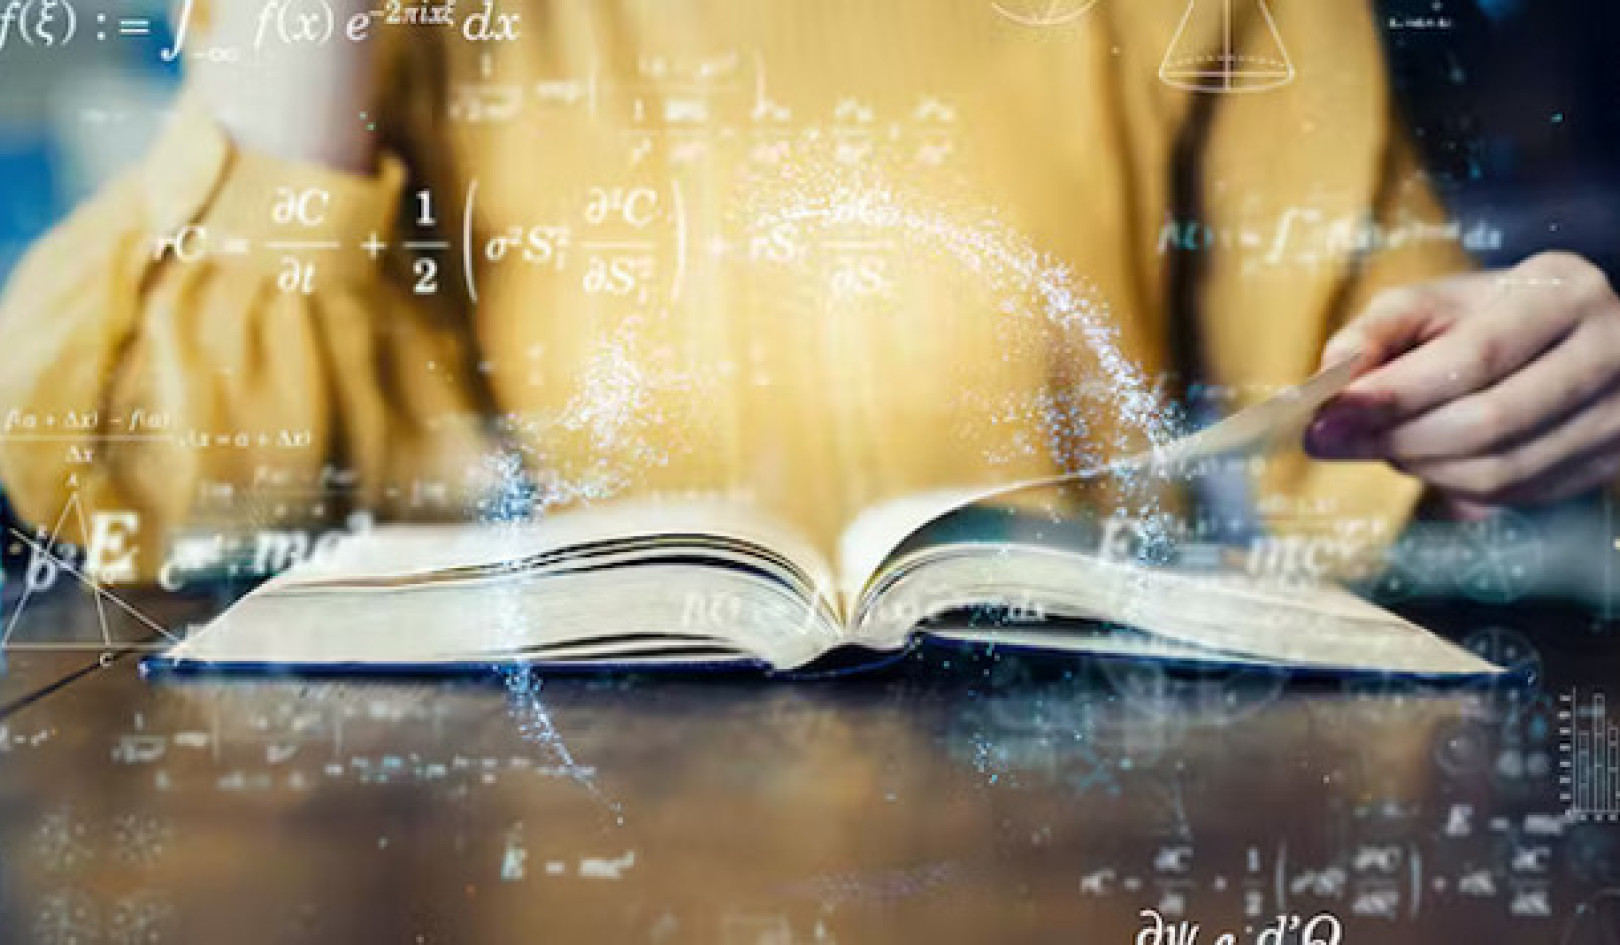 3 anledningar till att vi använder grafiska romaner för att lära ut matematik och fysik